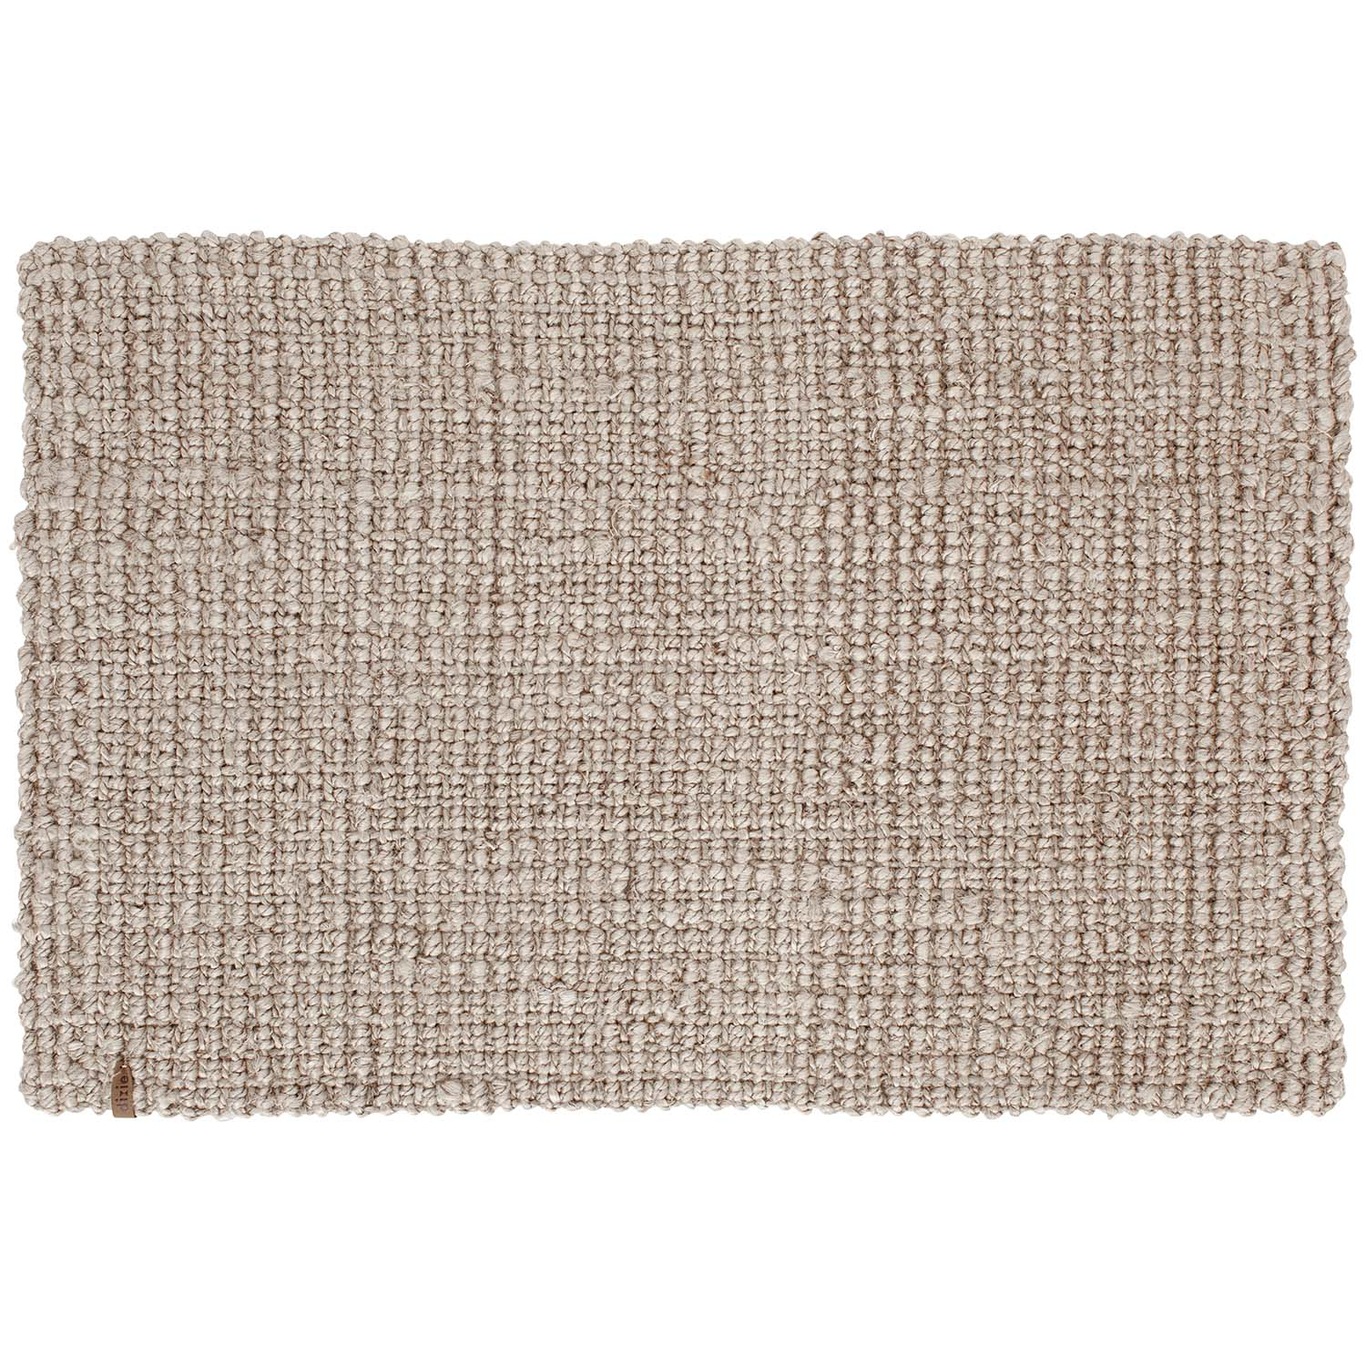 Jute Doormat 60x90 cm, Grey / Beige